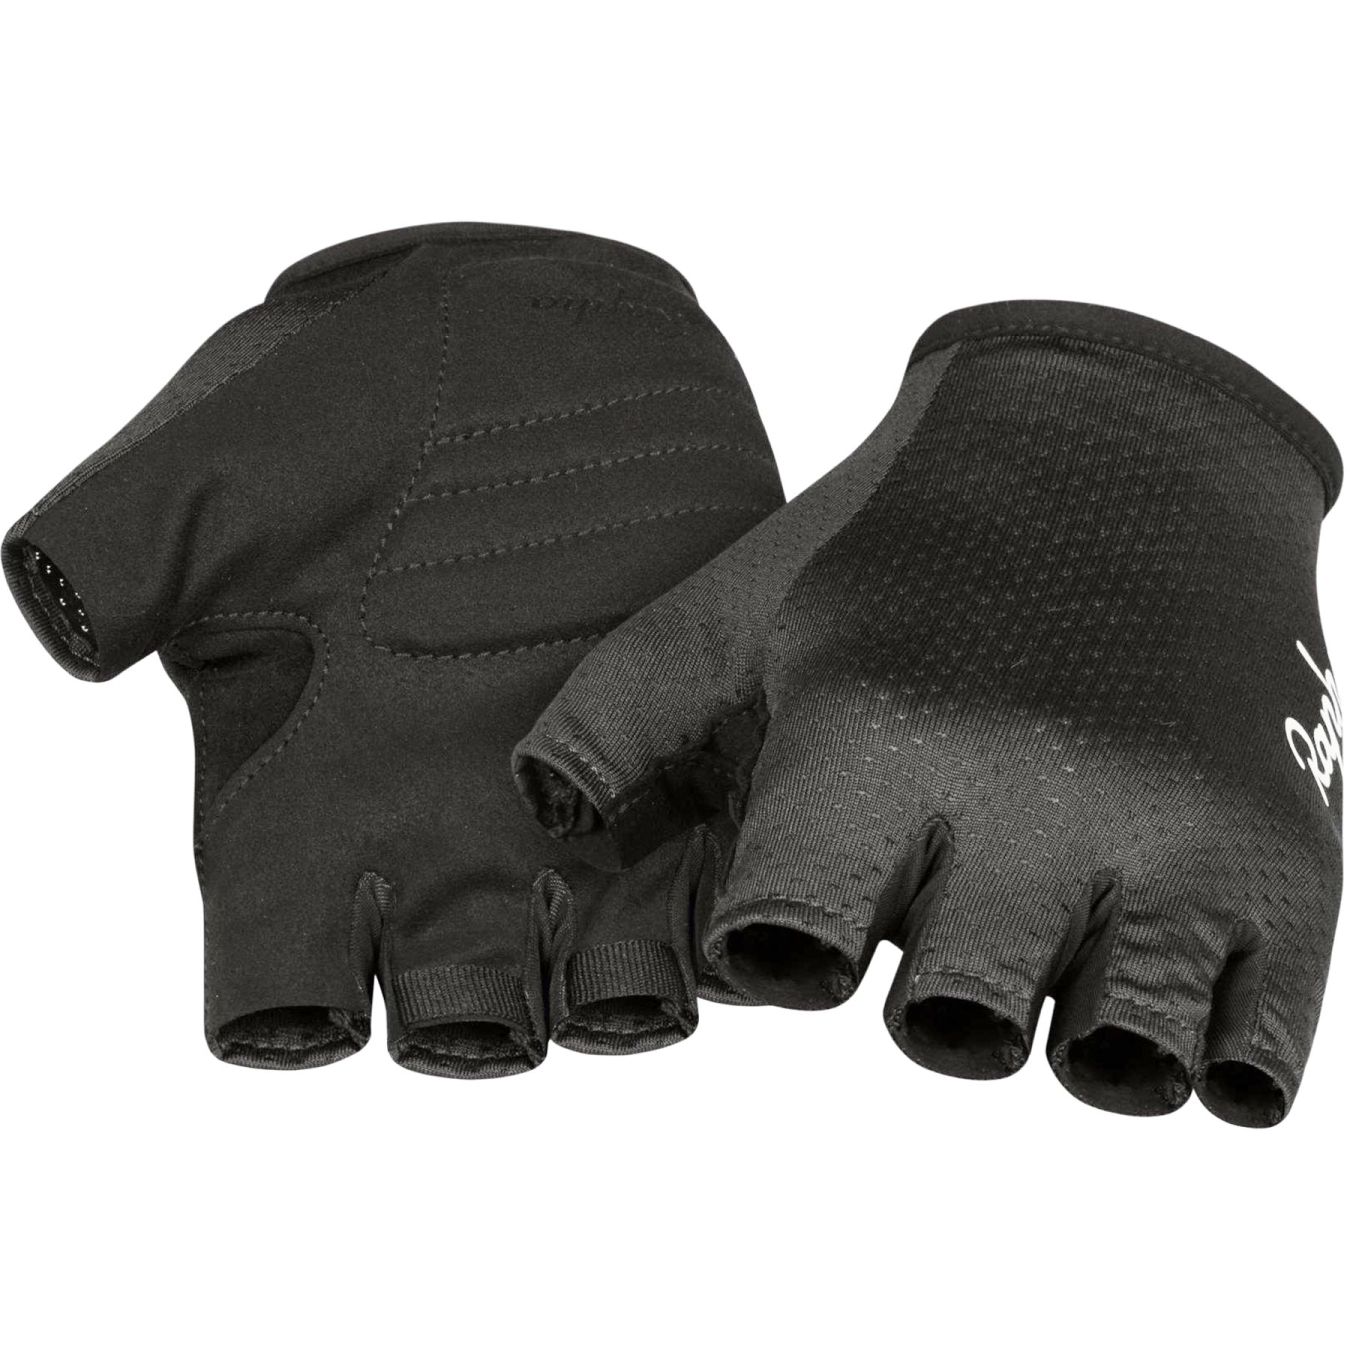 Produktbild von Rapha Core Kurzfinger-Handschuhe - black